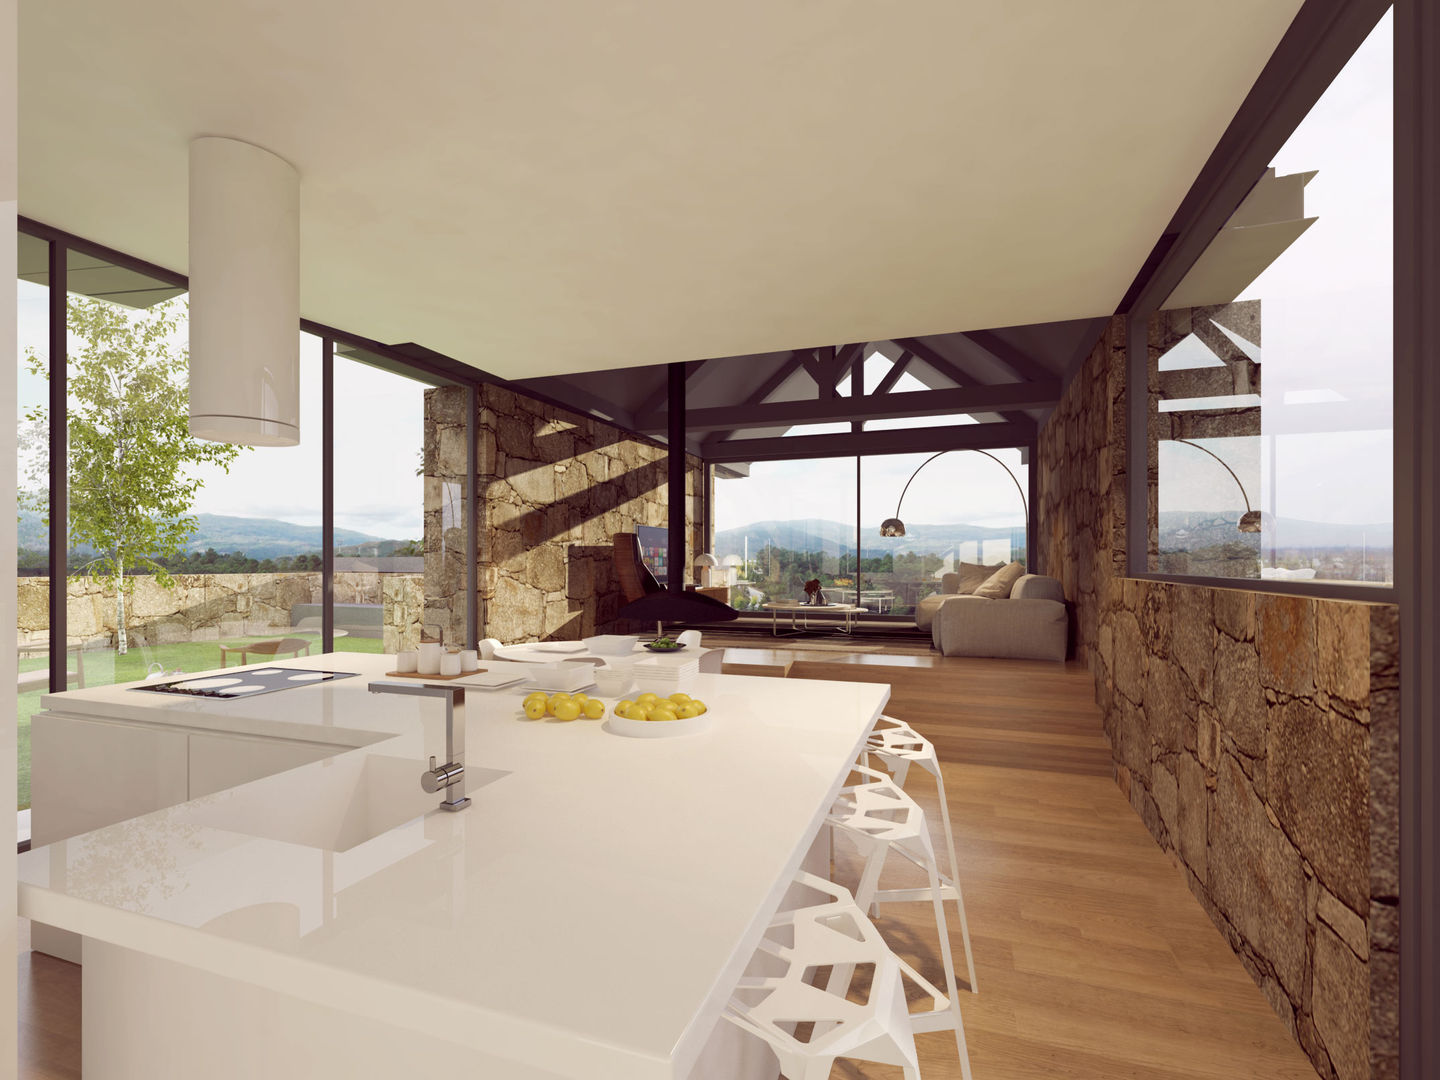 Recuperação de uma habitação rural em Melgaço, Davide Domingues Arquitecto Davide Domingues Arquitecto Rustic style kitchen